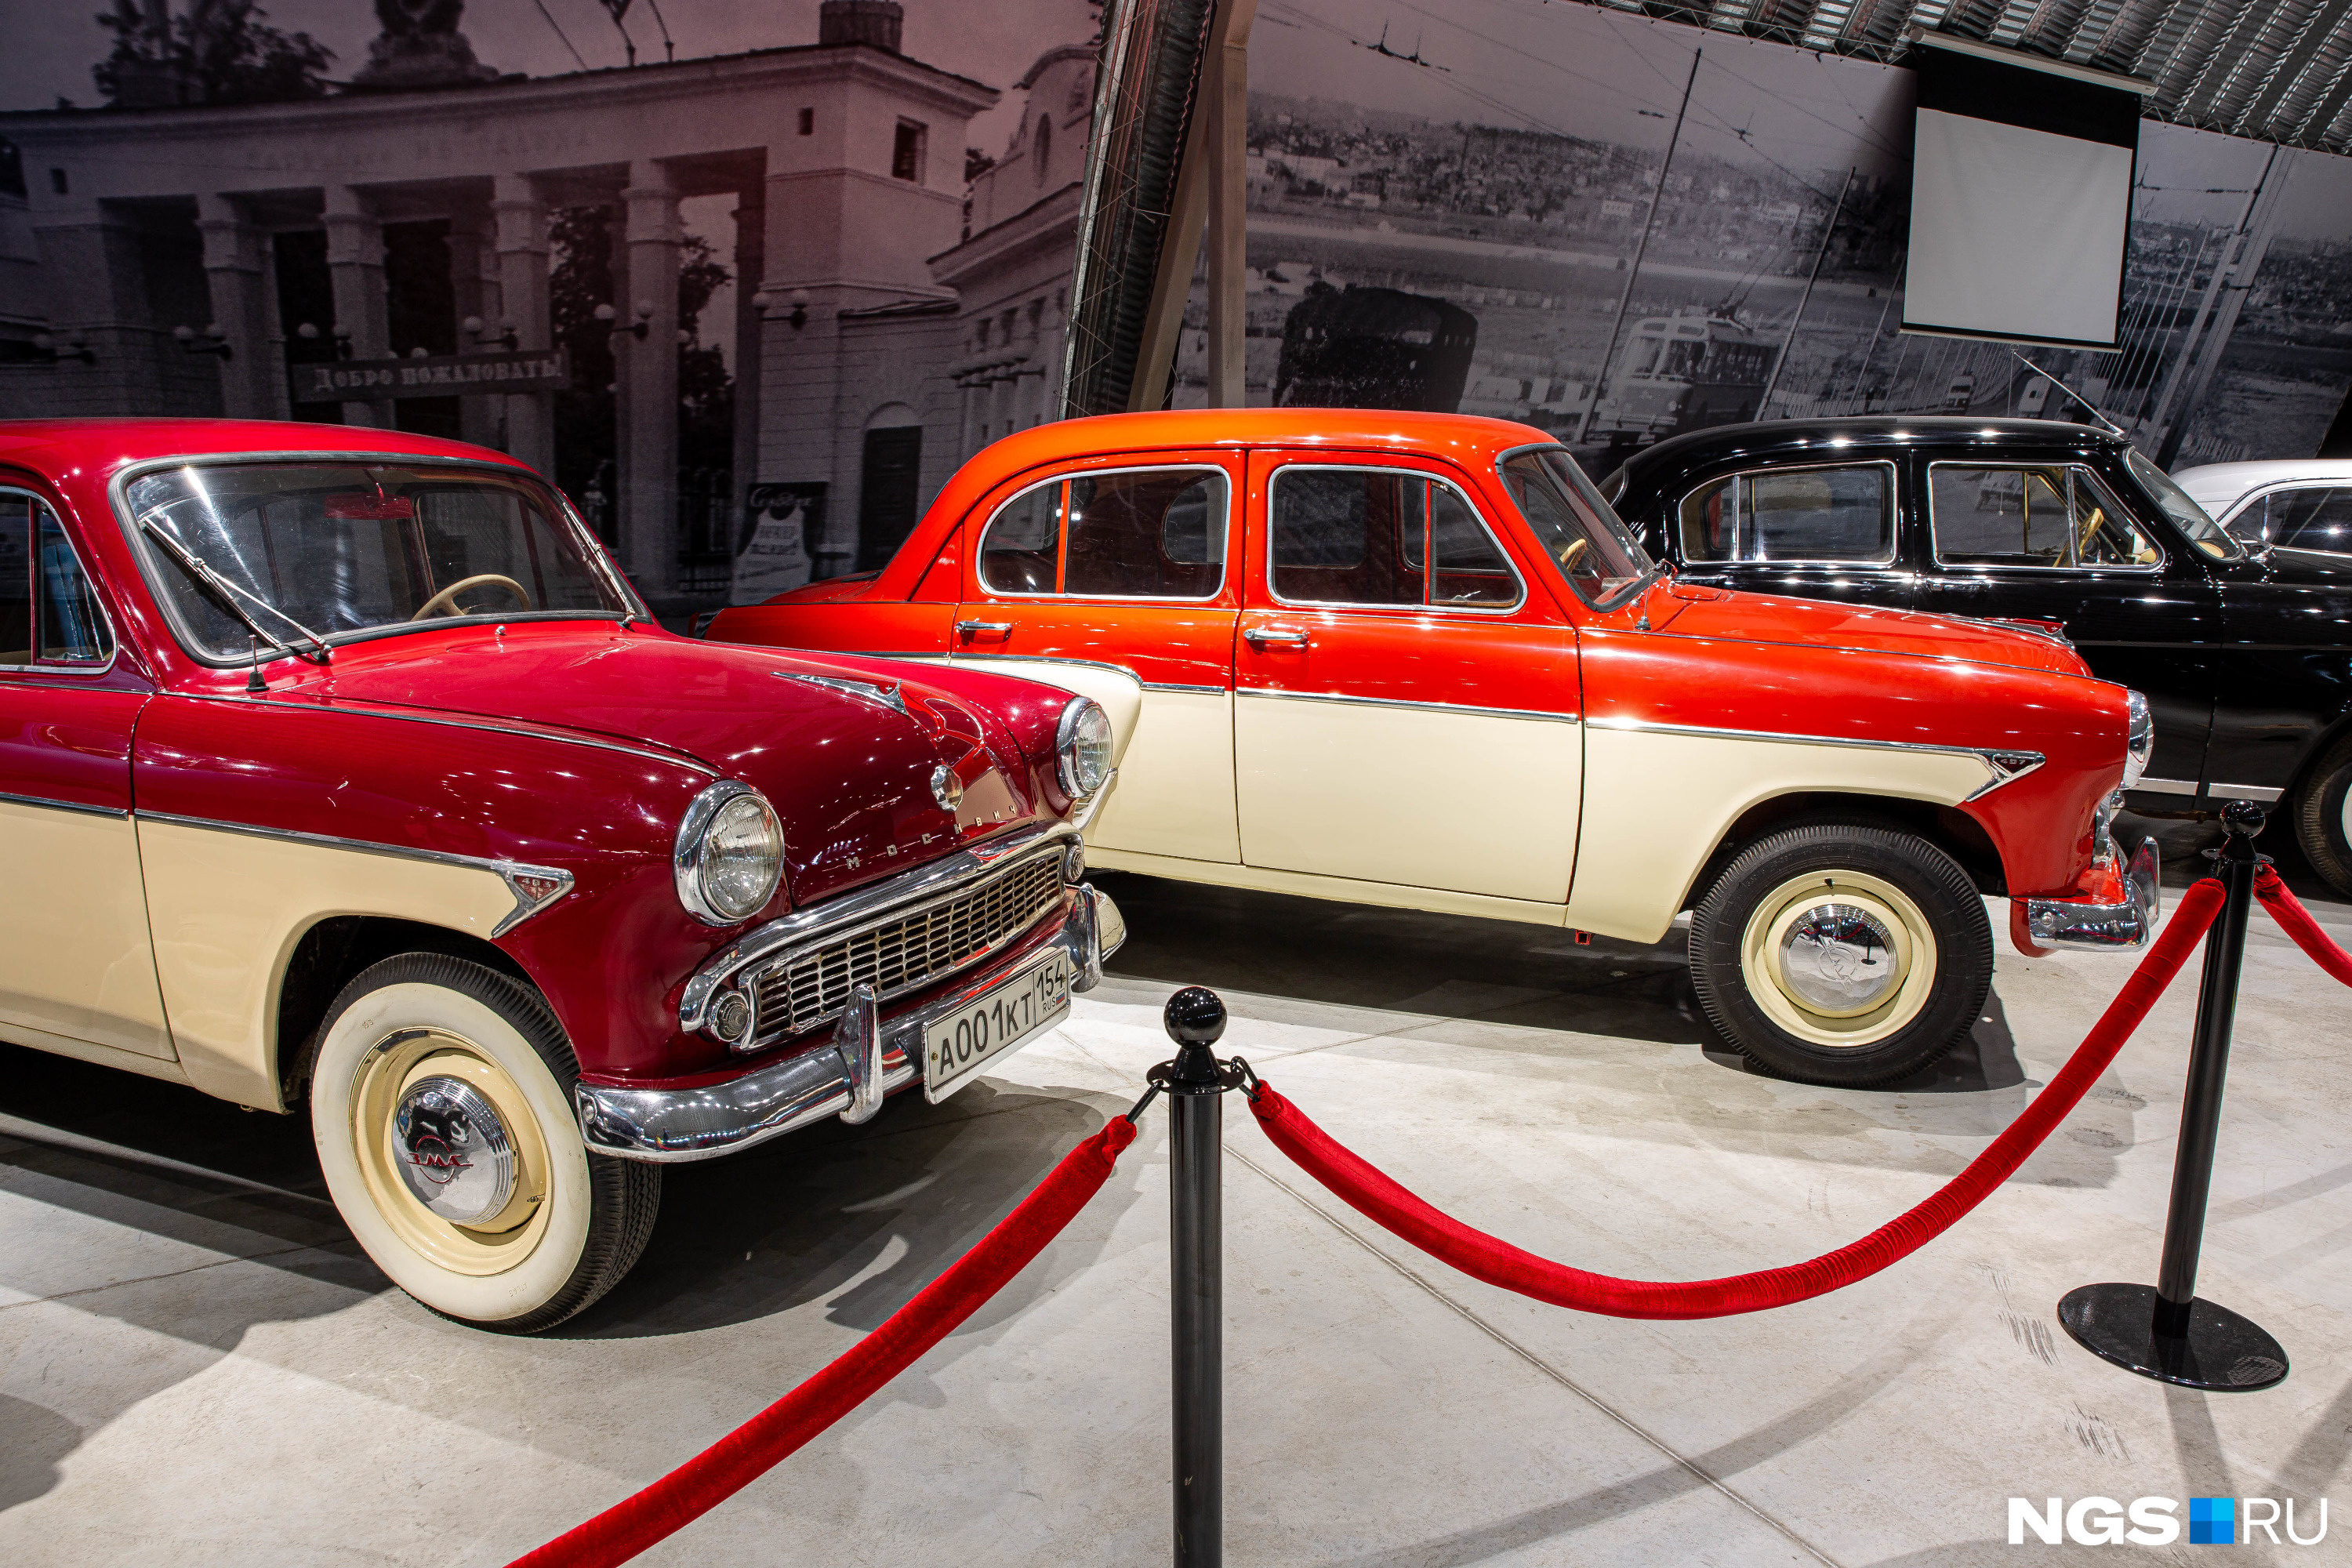 В музее пока нет иностранных авто, но, возможно, они появятся в будущем